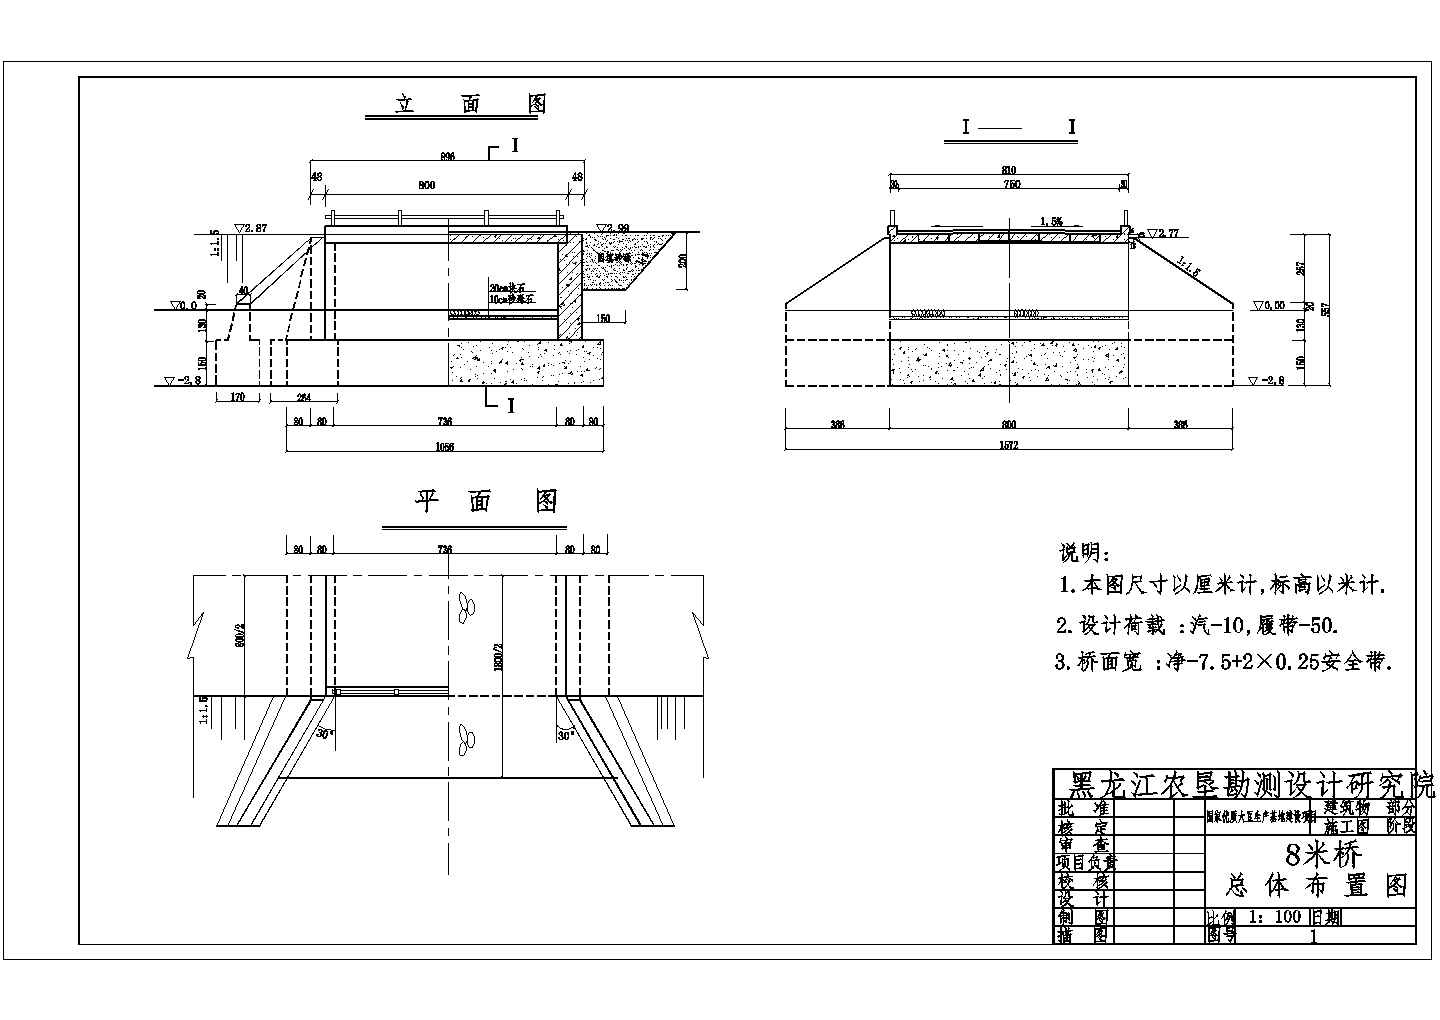 黑龙江垦区北安科研所国家优质大豆生产基地建设项目重力桥施工图纸